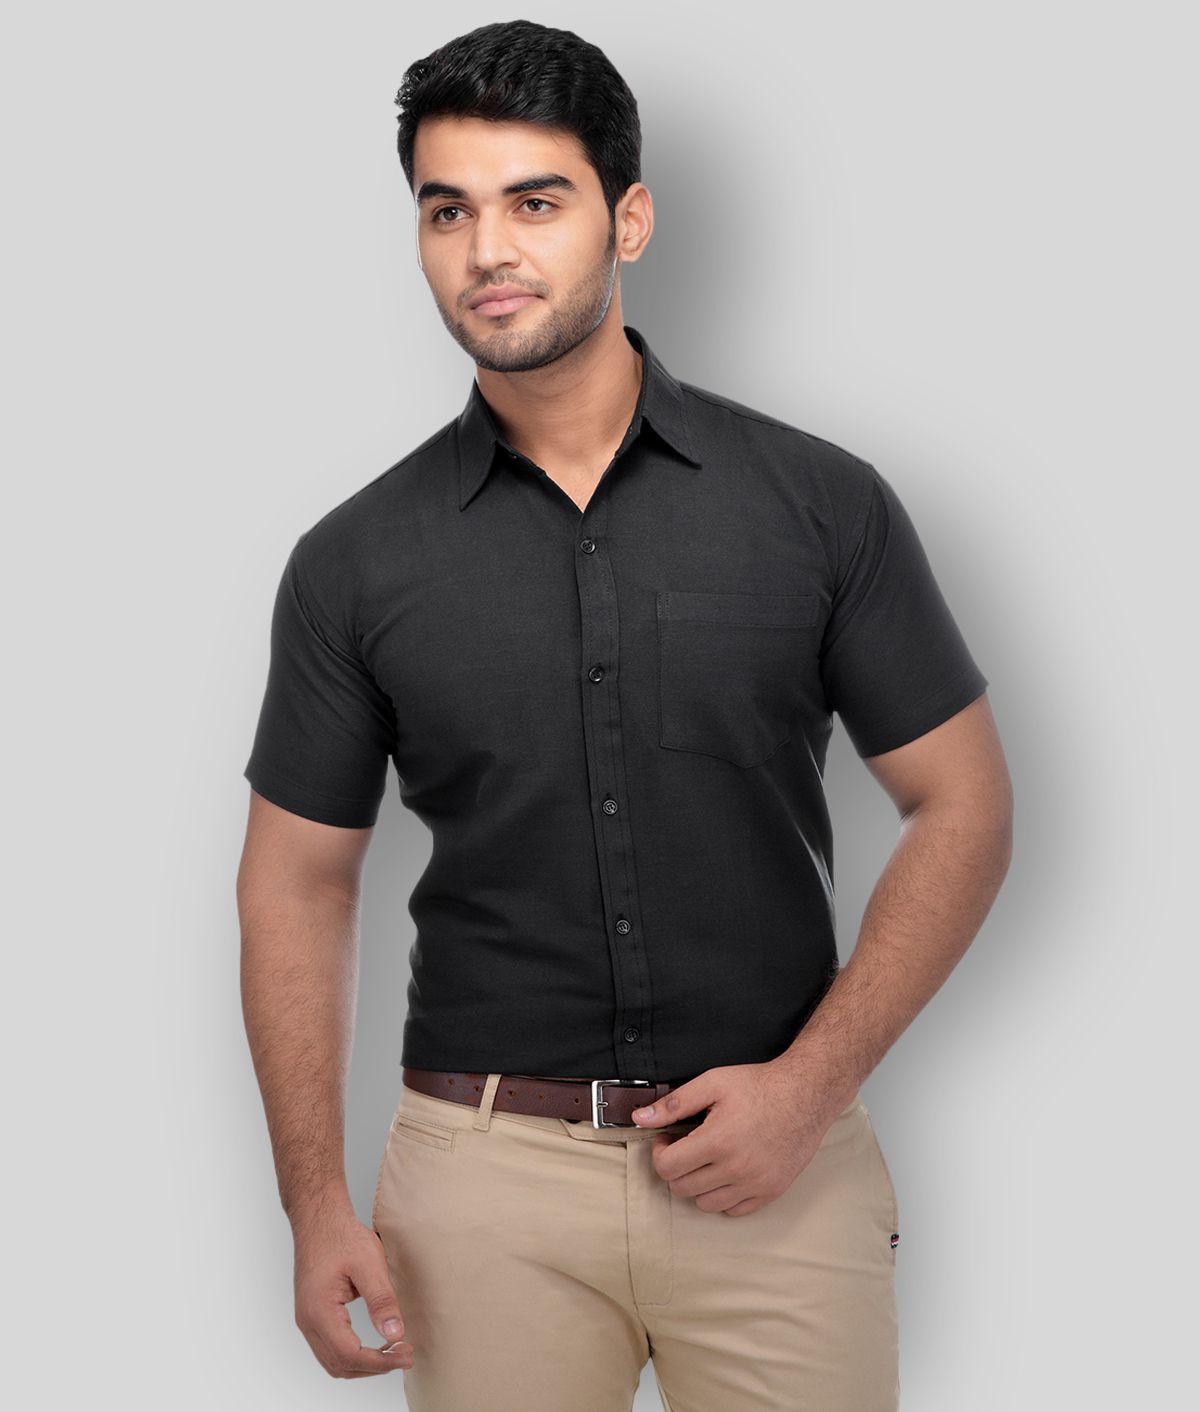     			DESHBANDHU DBK - Black Cotton Regular Fit Men's Formal Shirt (Pack of 1)